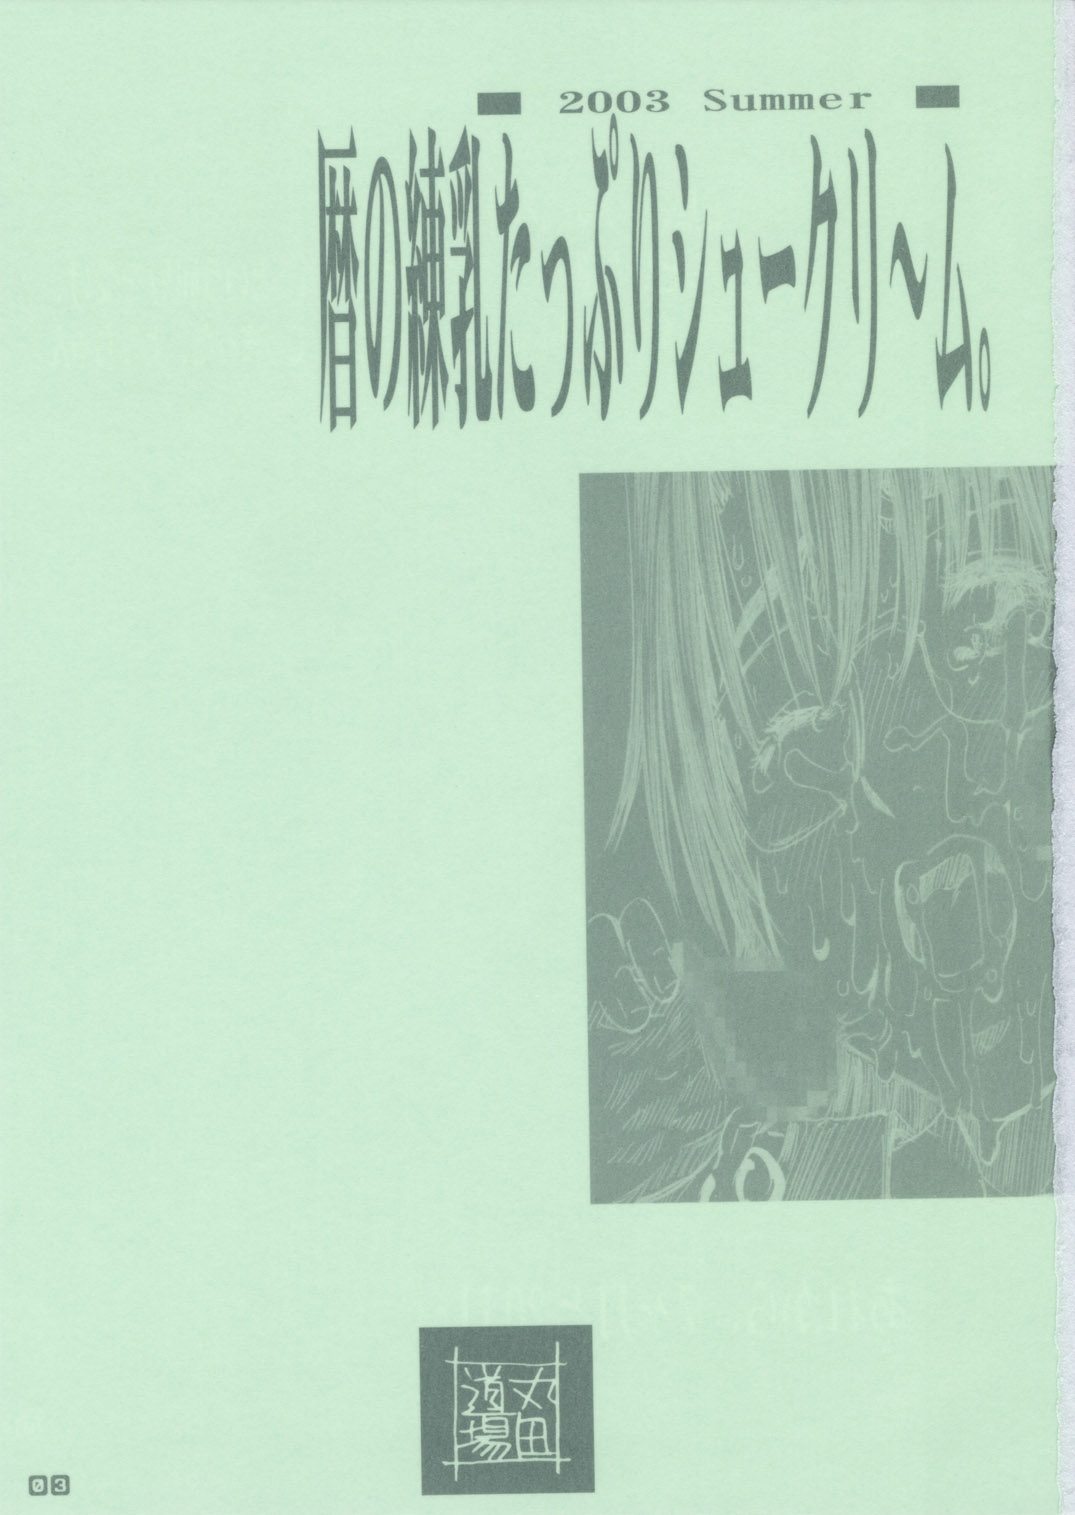 (C64) [MARUTA DO-JO (MARUTA)] Koyomi no Ren-nyu Tappuri Syu-Kuri-mu (Azumanga-Daioh) [丸田道場 (MARUTA)] 暦の練乳たっぷりシュークリ～ム。 (あずまんが大王)